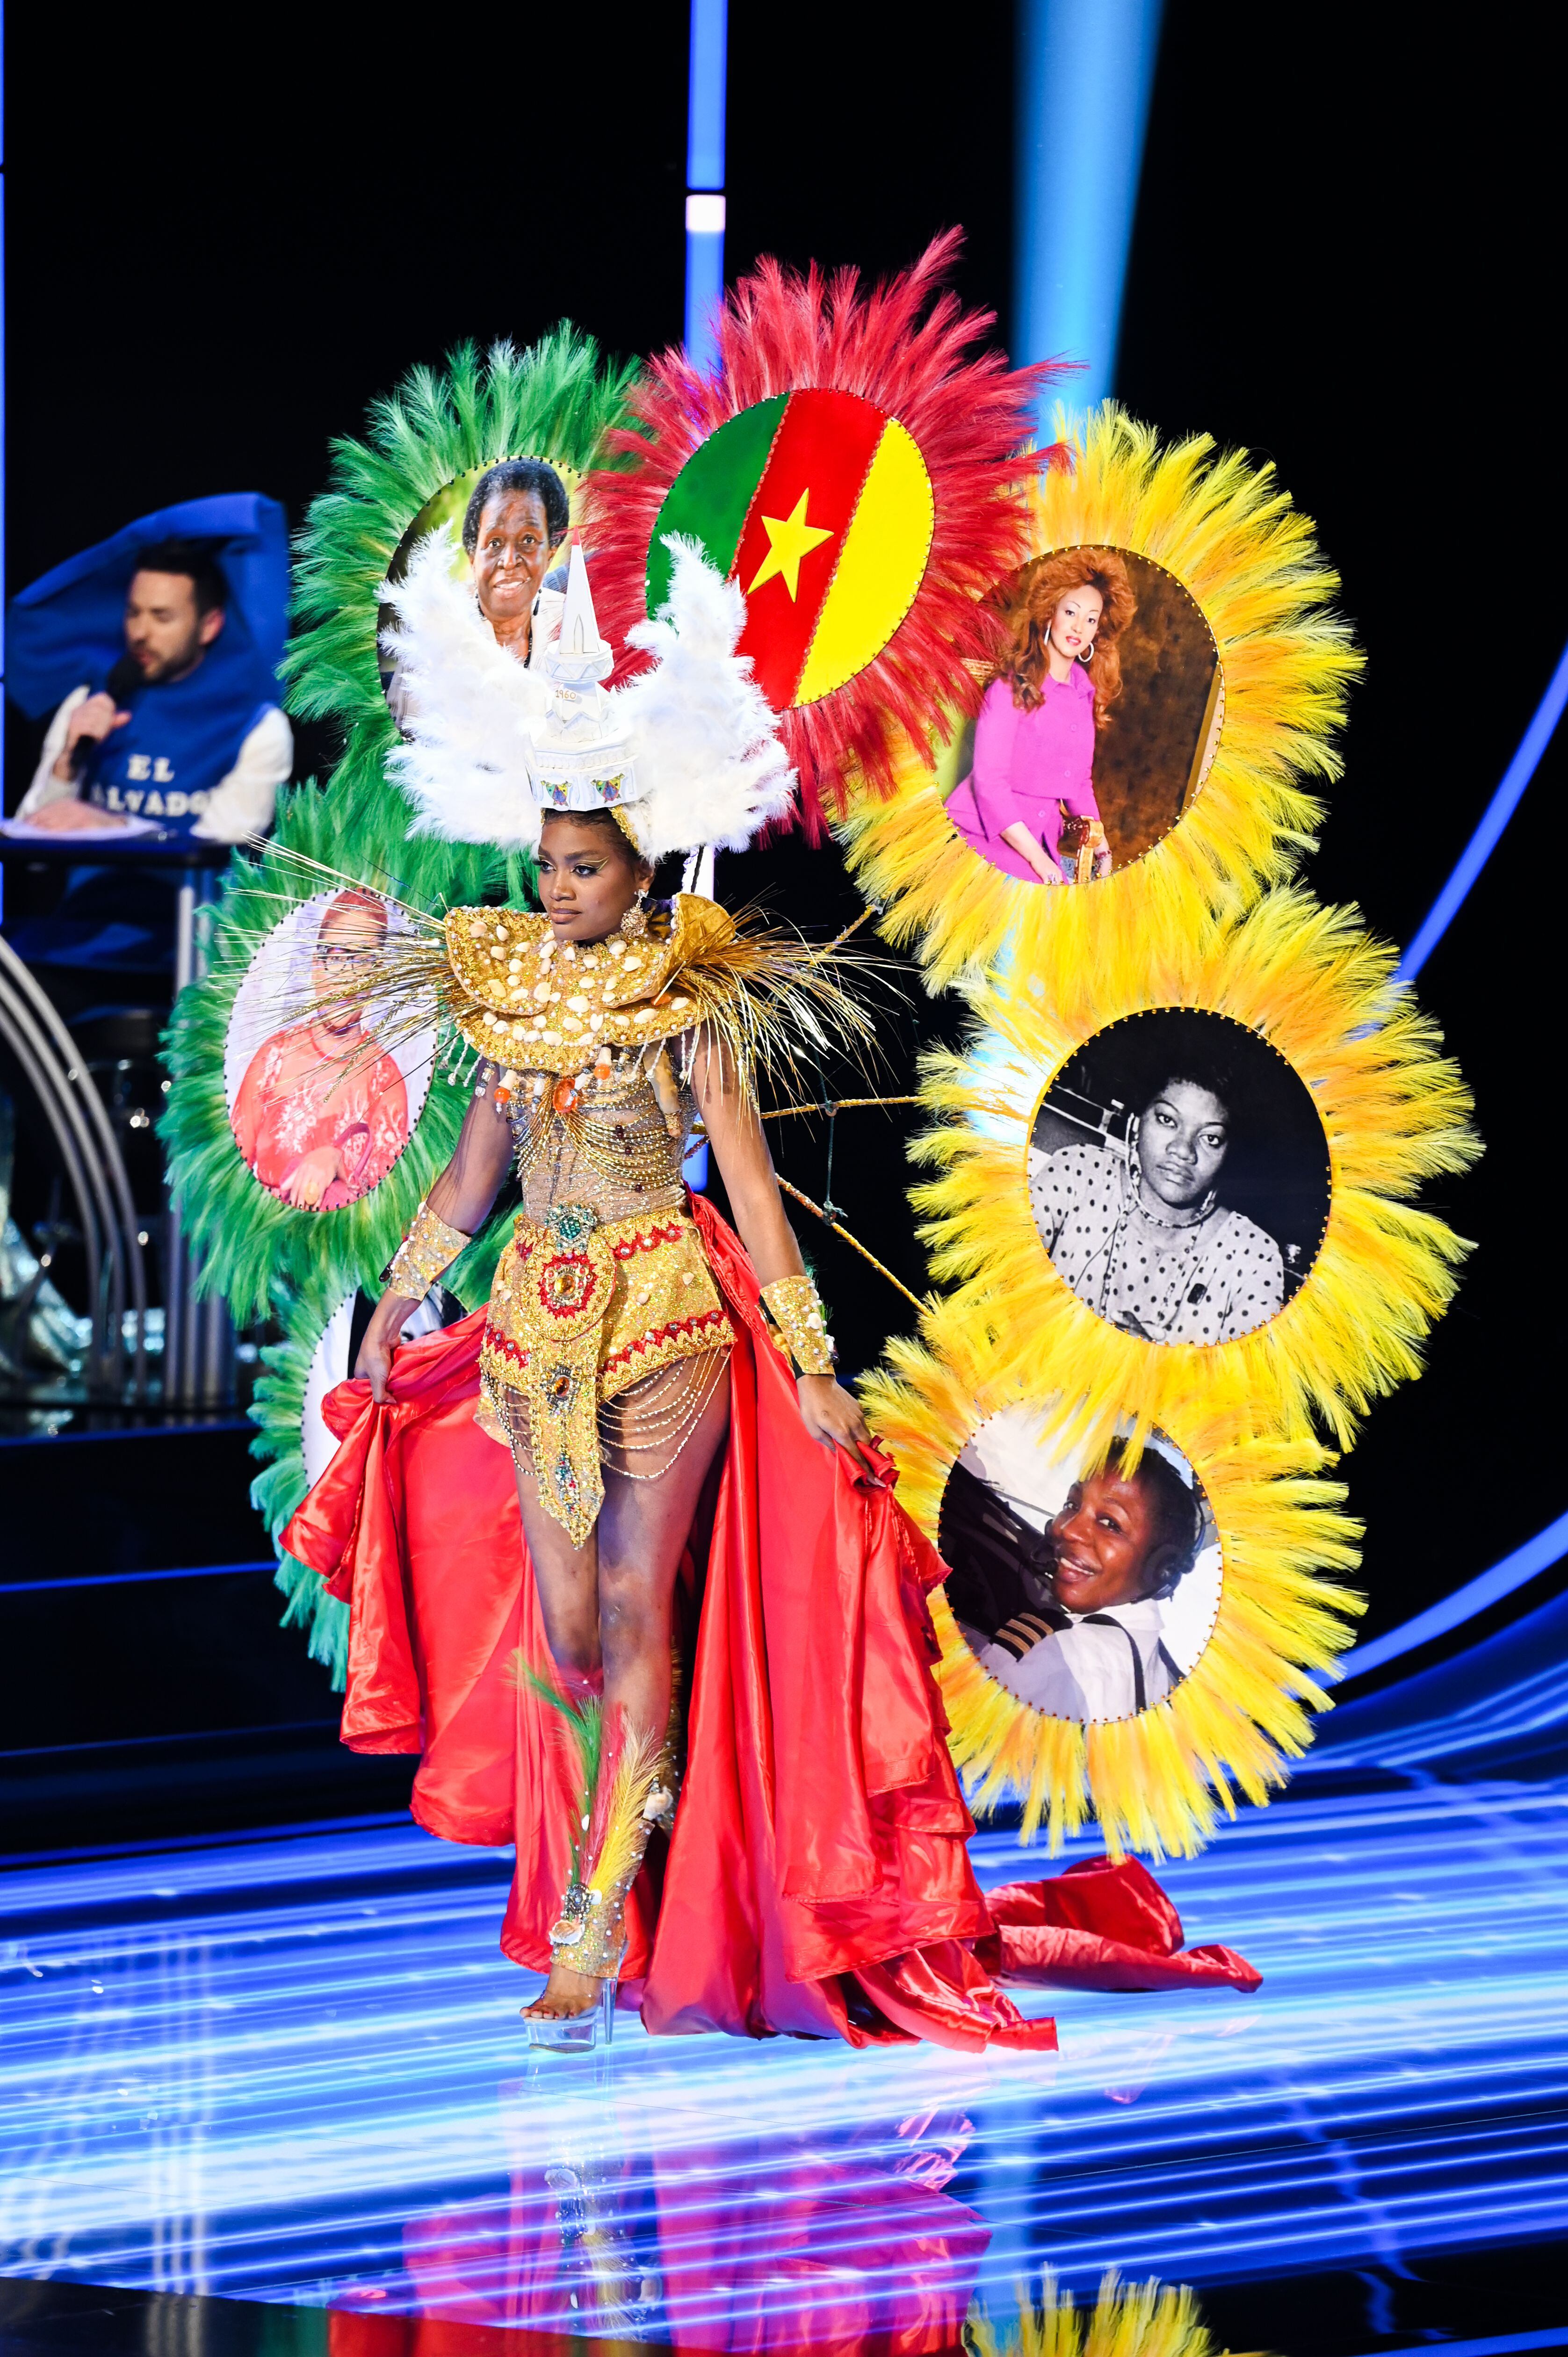 Issie Princesse, Miss Camerún, recibió aplausos por la originalidad de su traje. Foto: Miss Universe